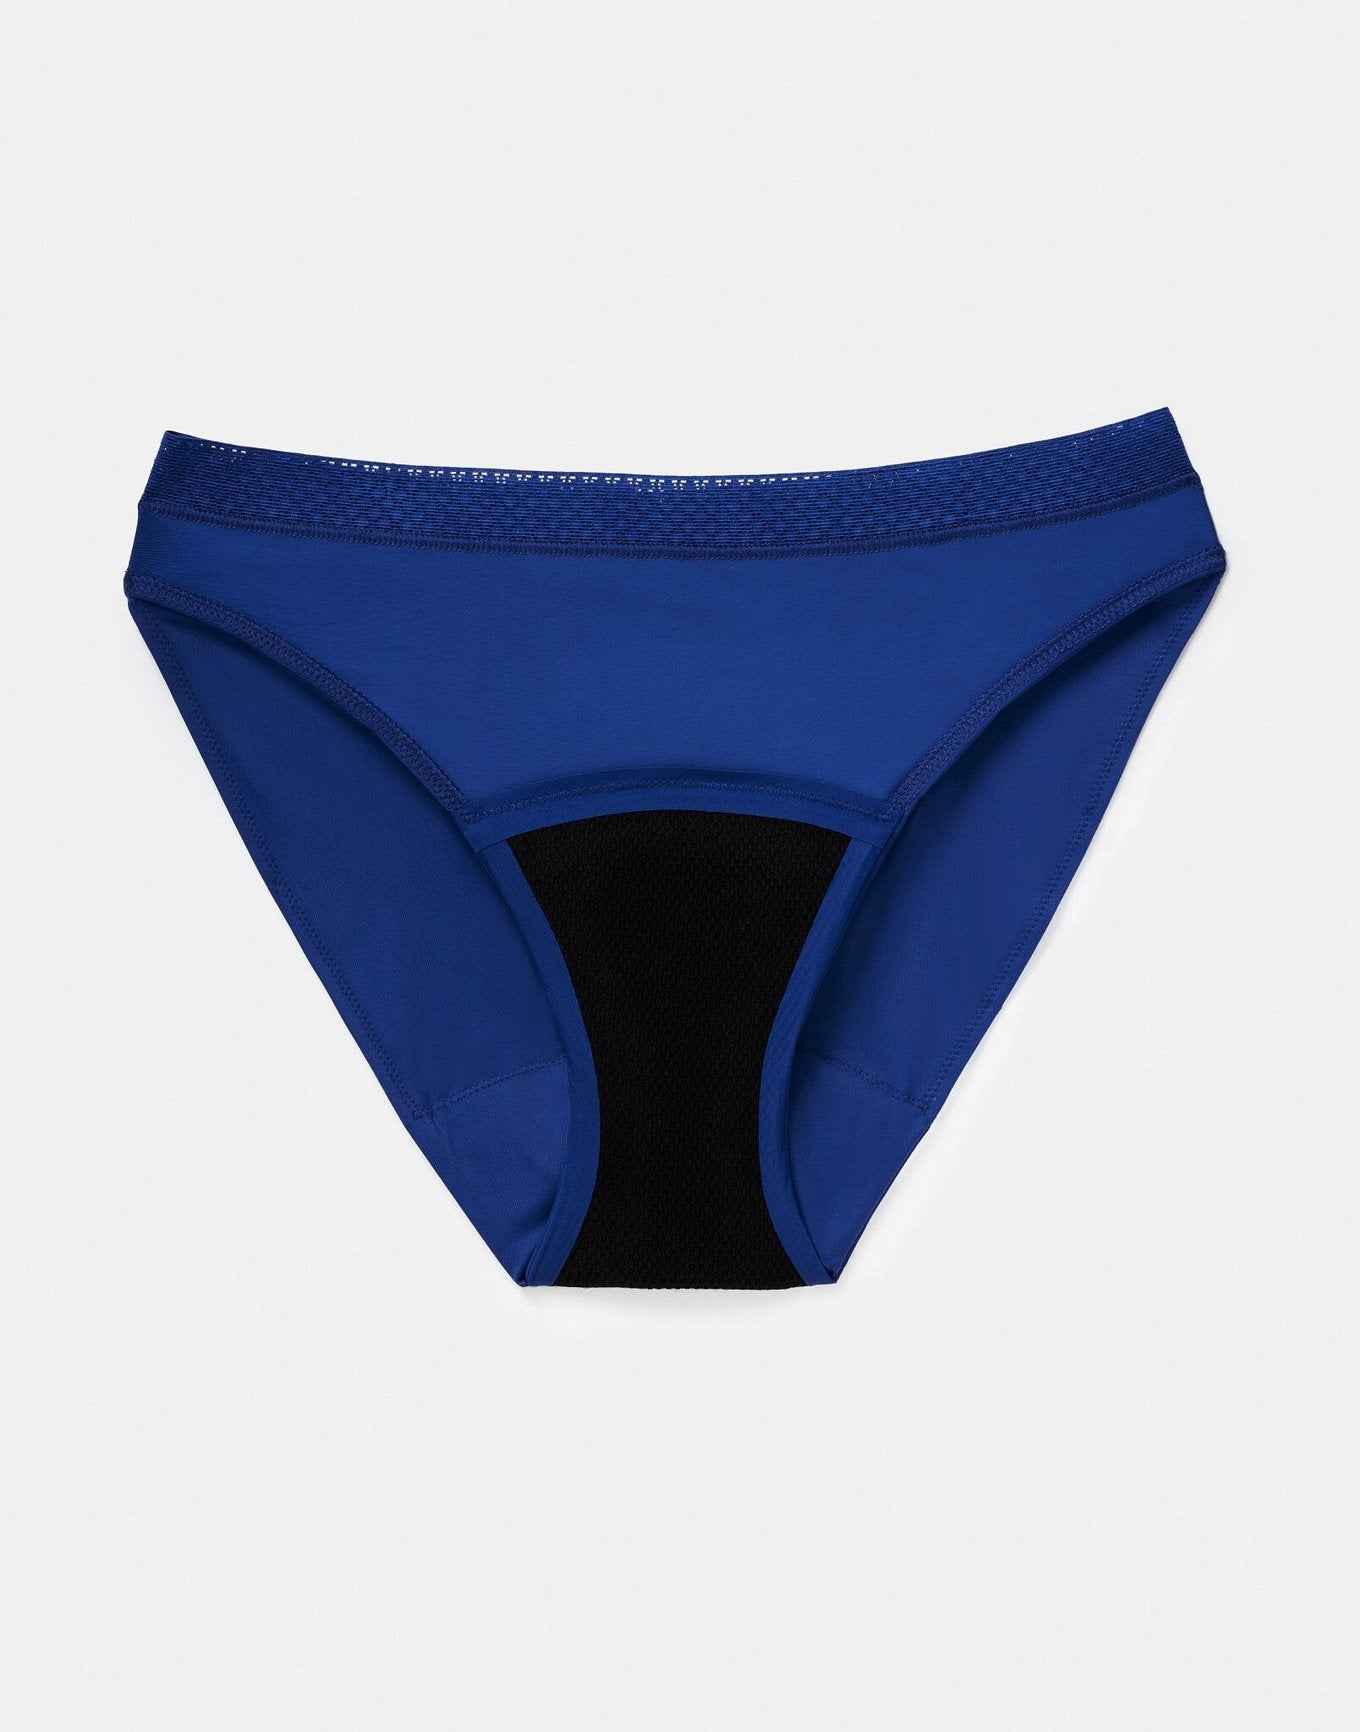 Joyja Katelin period-proof panty in color Sodalite Blue and shape bikini